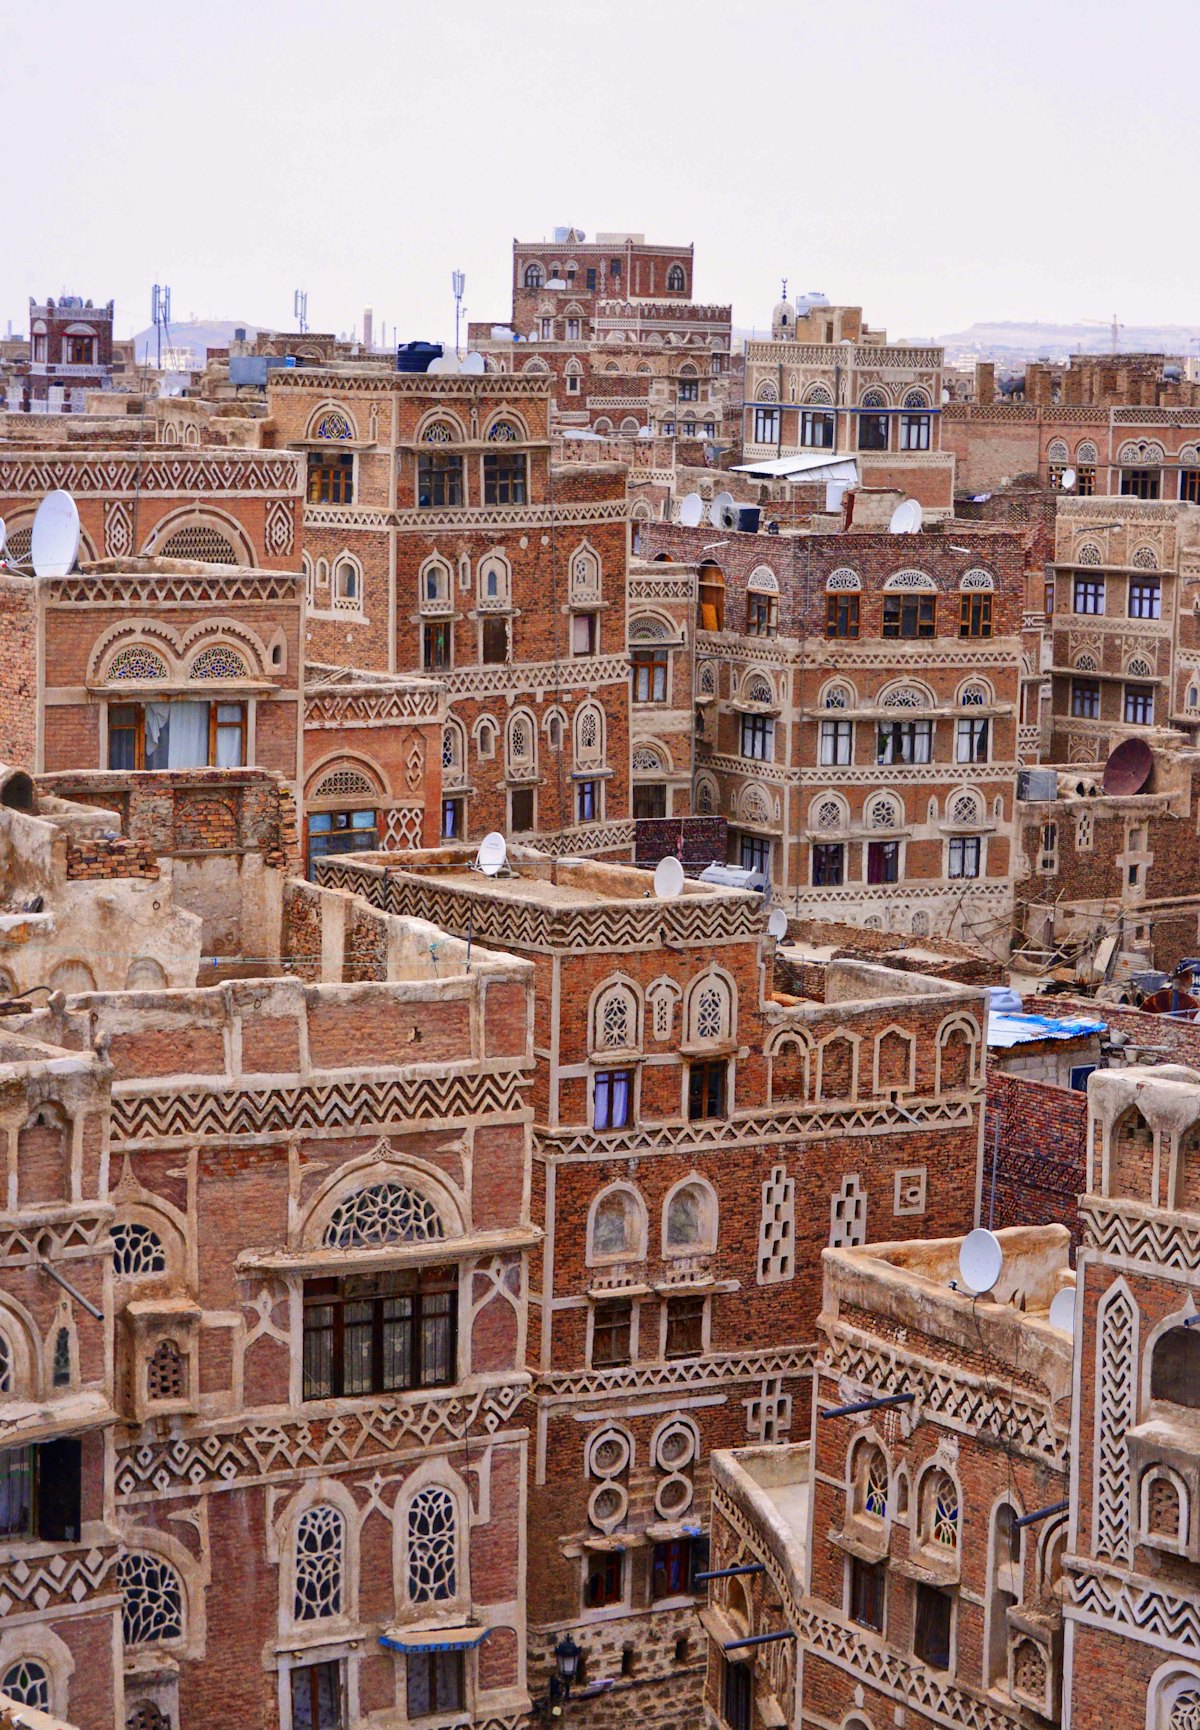 Imagen de la ciudad vieja de Sana’a. Sana’a es la ciudad más grande de Yemen. Fotografía: Rod Waddington.